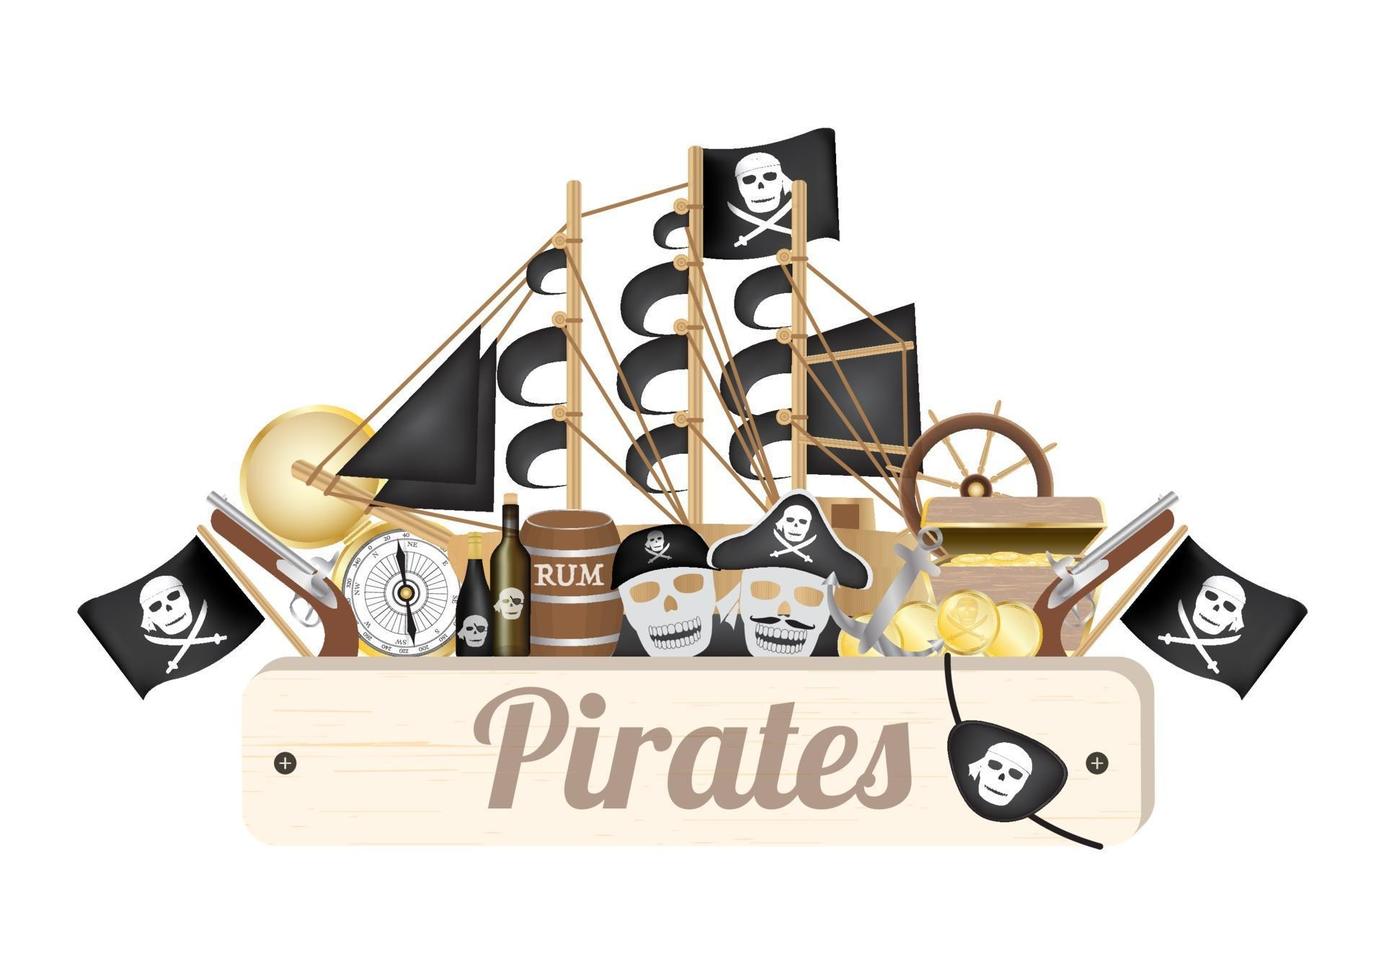 placa de madeira pirata com navio pirata, bússola, moeda de ouro, barril de rum, caixa do tesouro, bandeira, arma, tapa-olho vetor